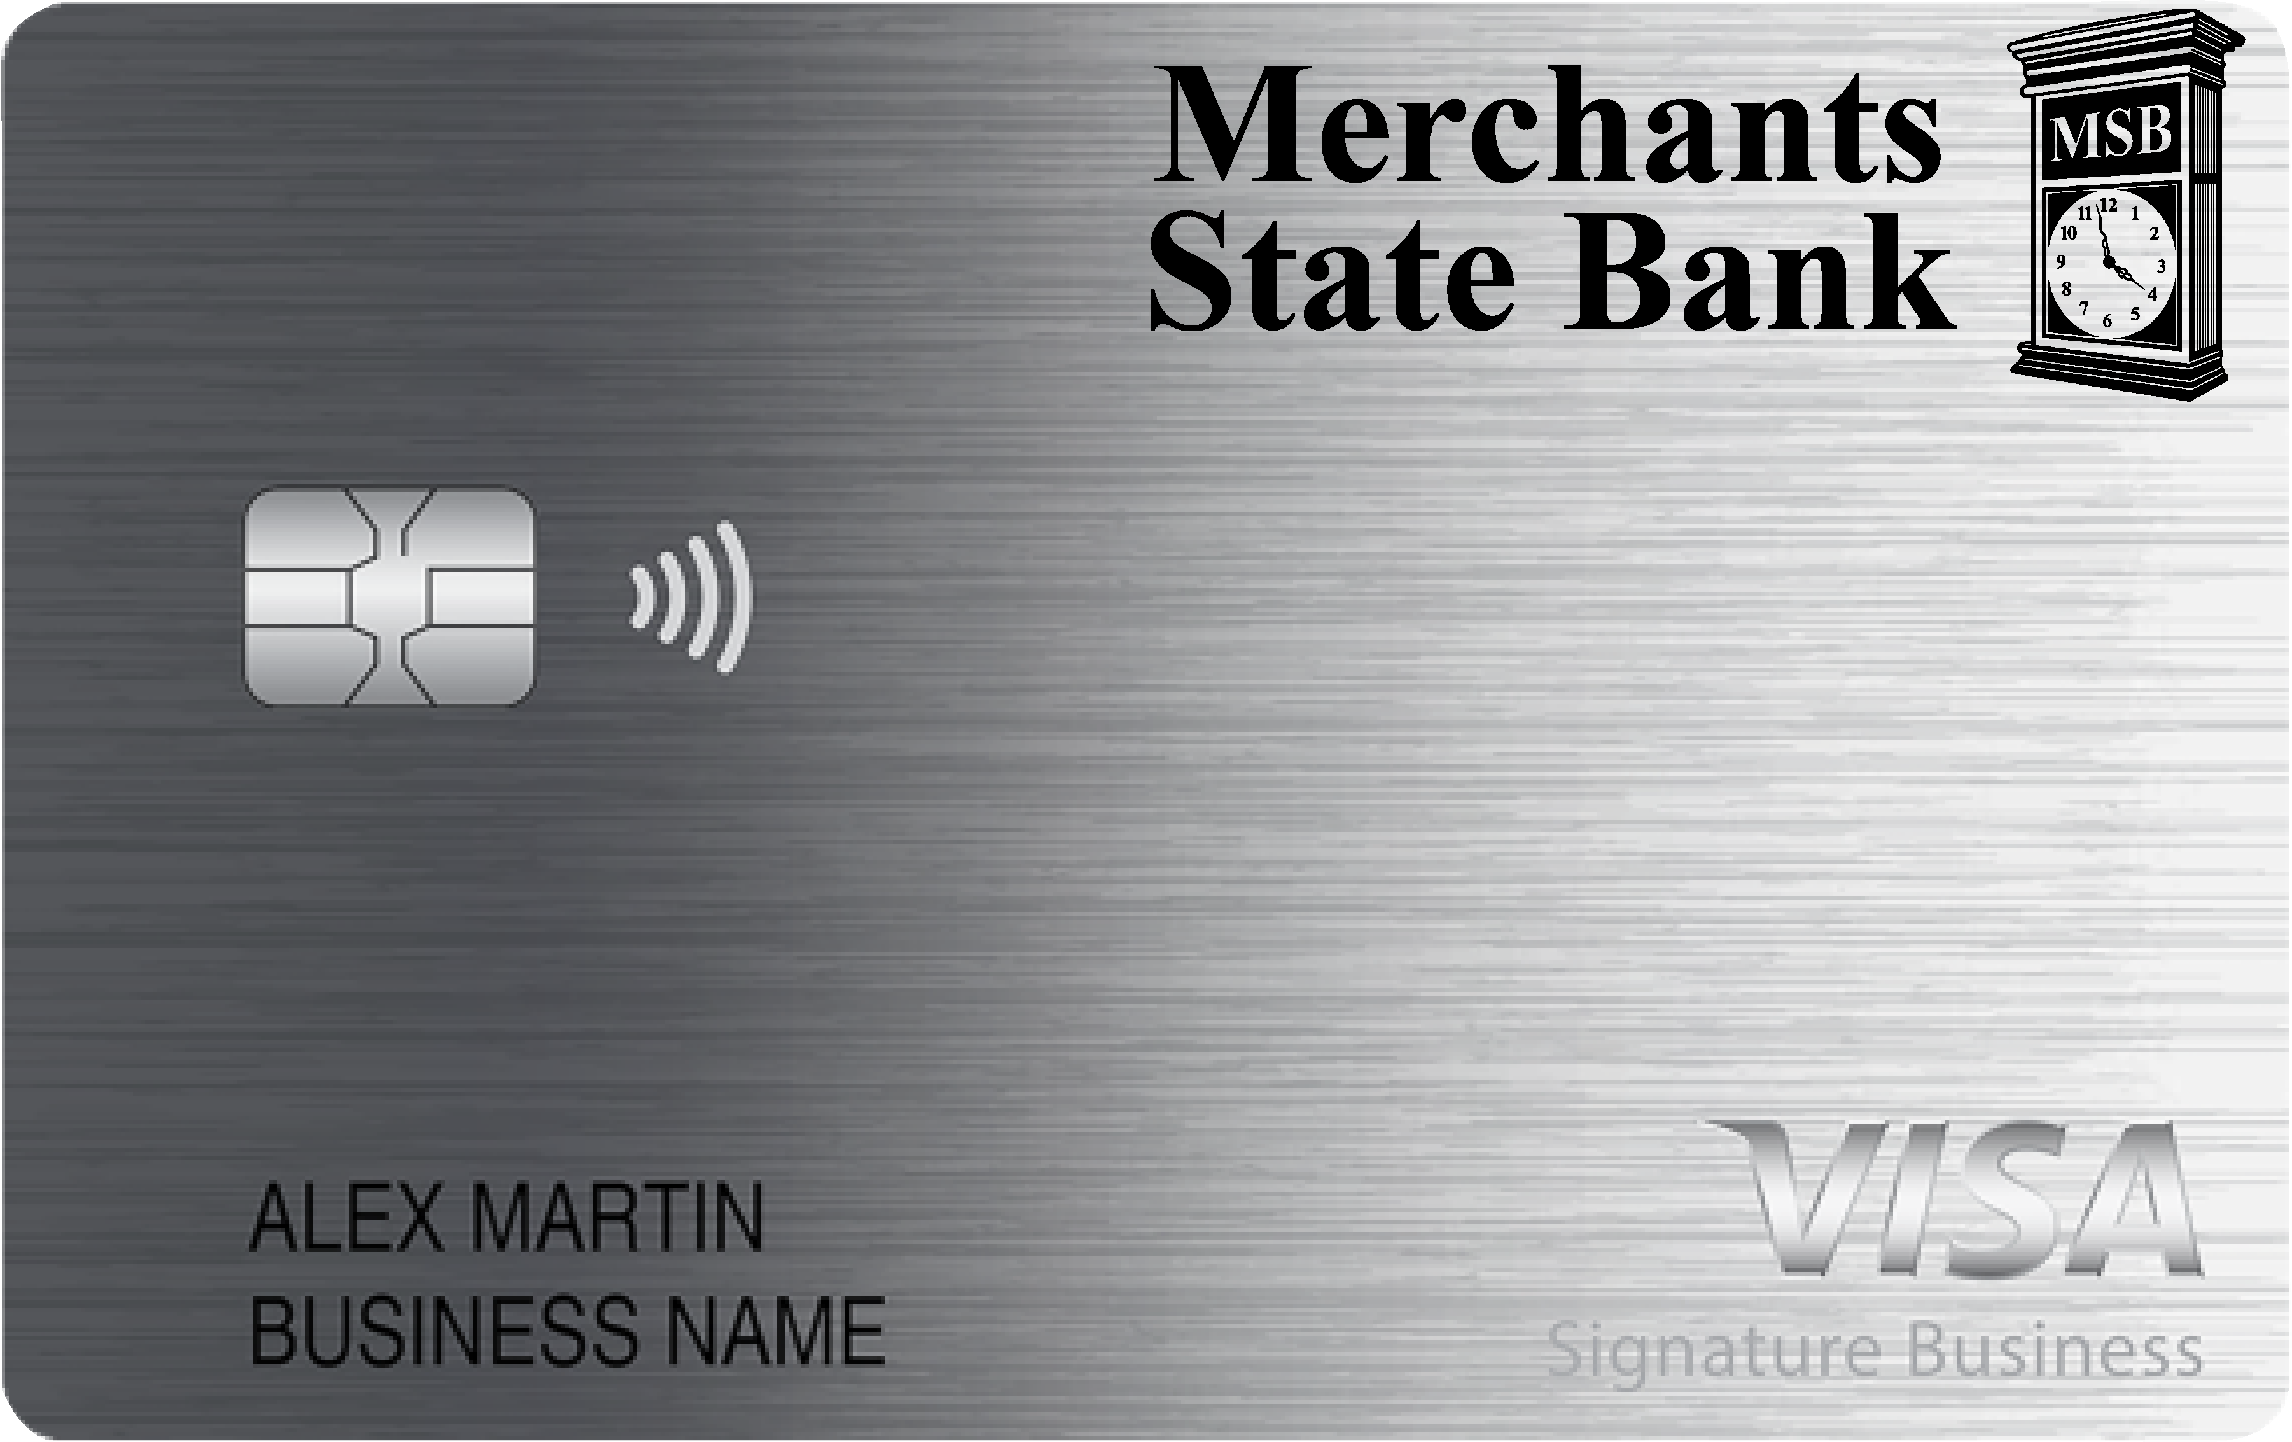 Merchants State Bank Smart Business Rewards Card